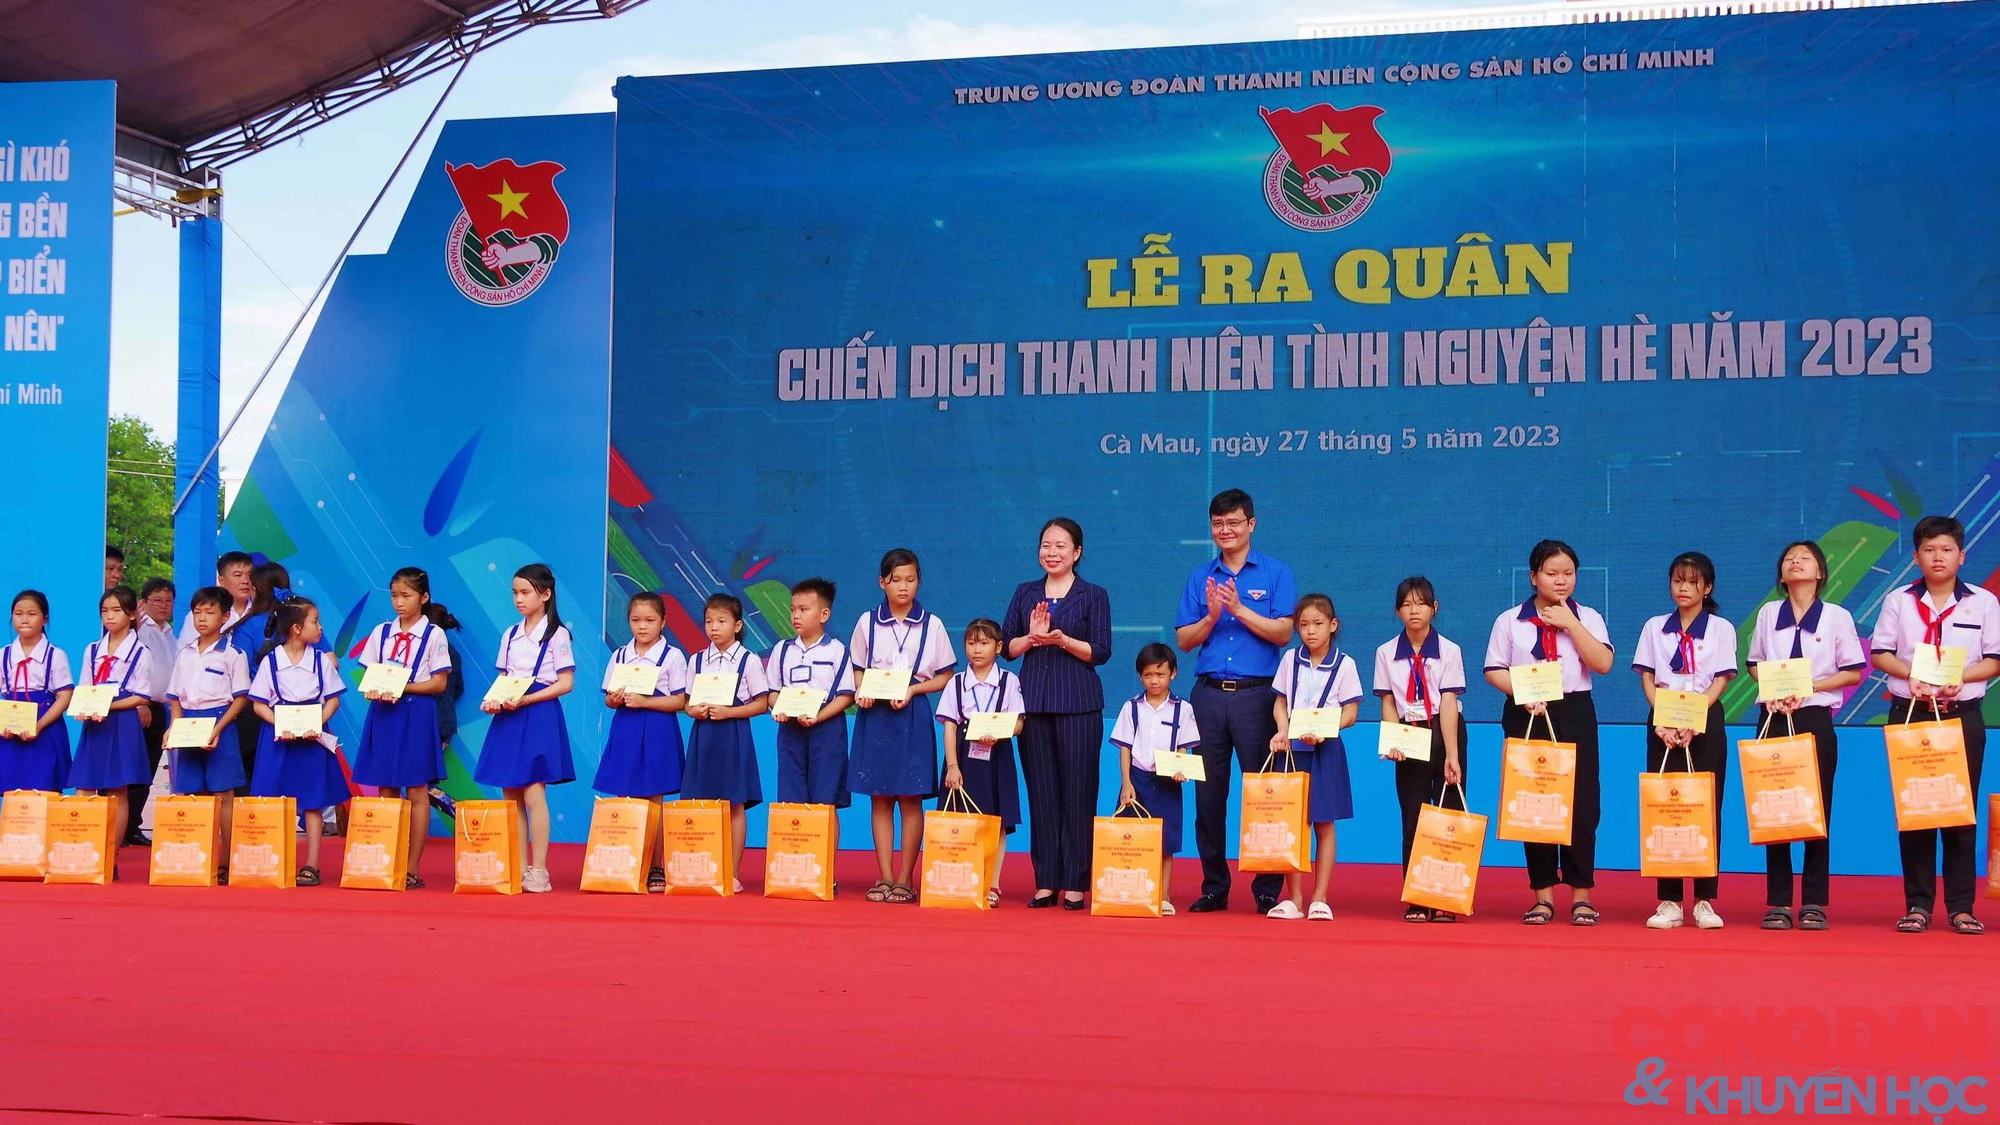 Phó Chủ tịch nước Võ Thị Ánh Xuân chủ trì Lễ chào cờ chủ quyền tại Cà Mau; Thanh niên tình nguyện Hè 2023 - Ảnh 2.